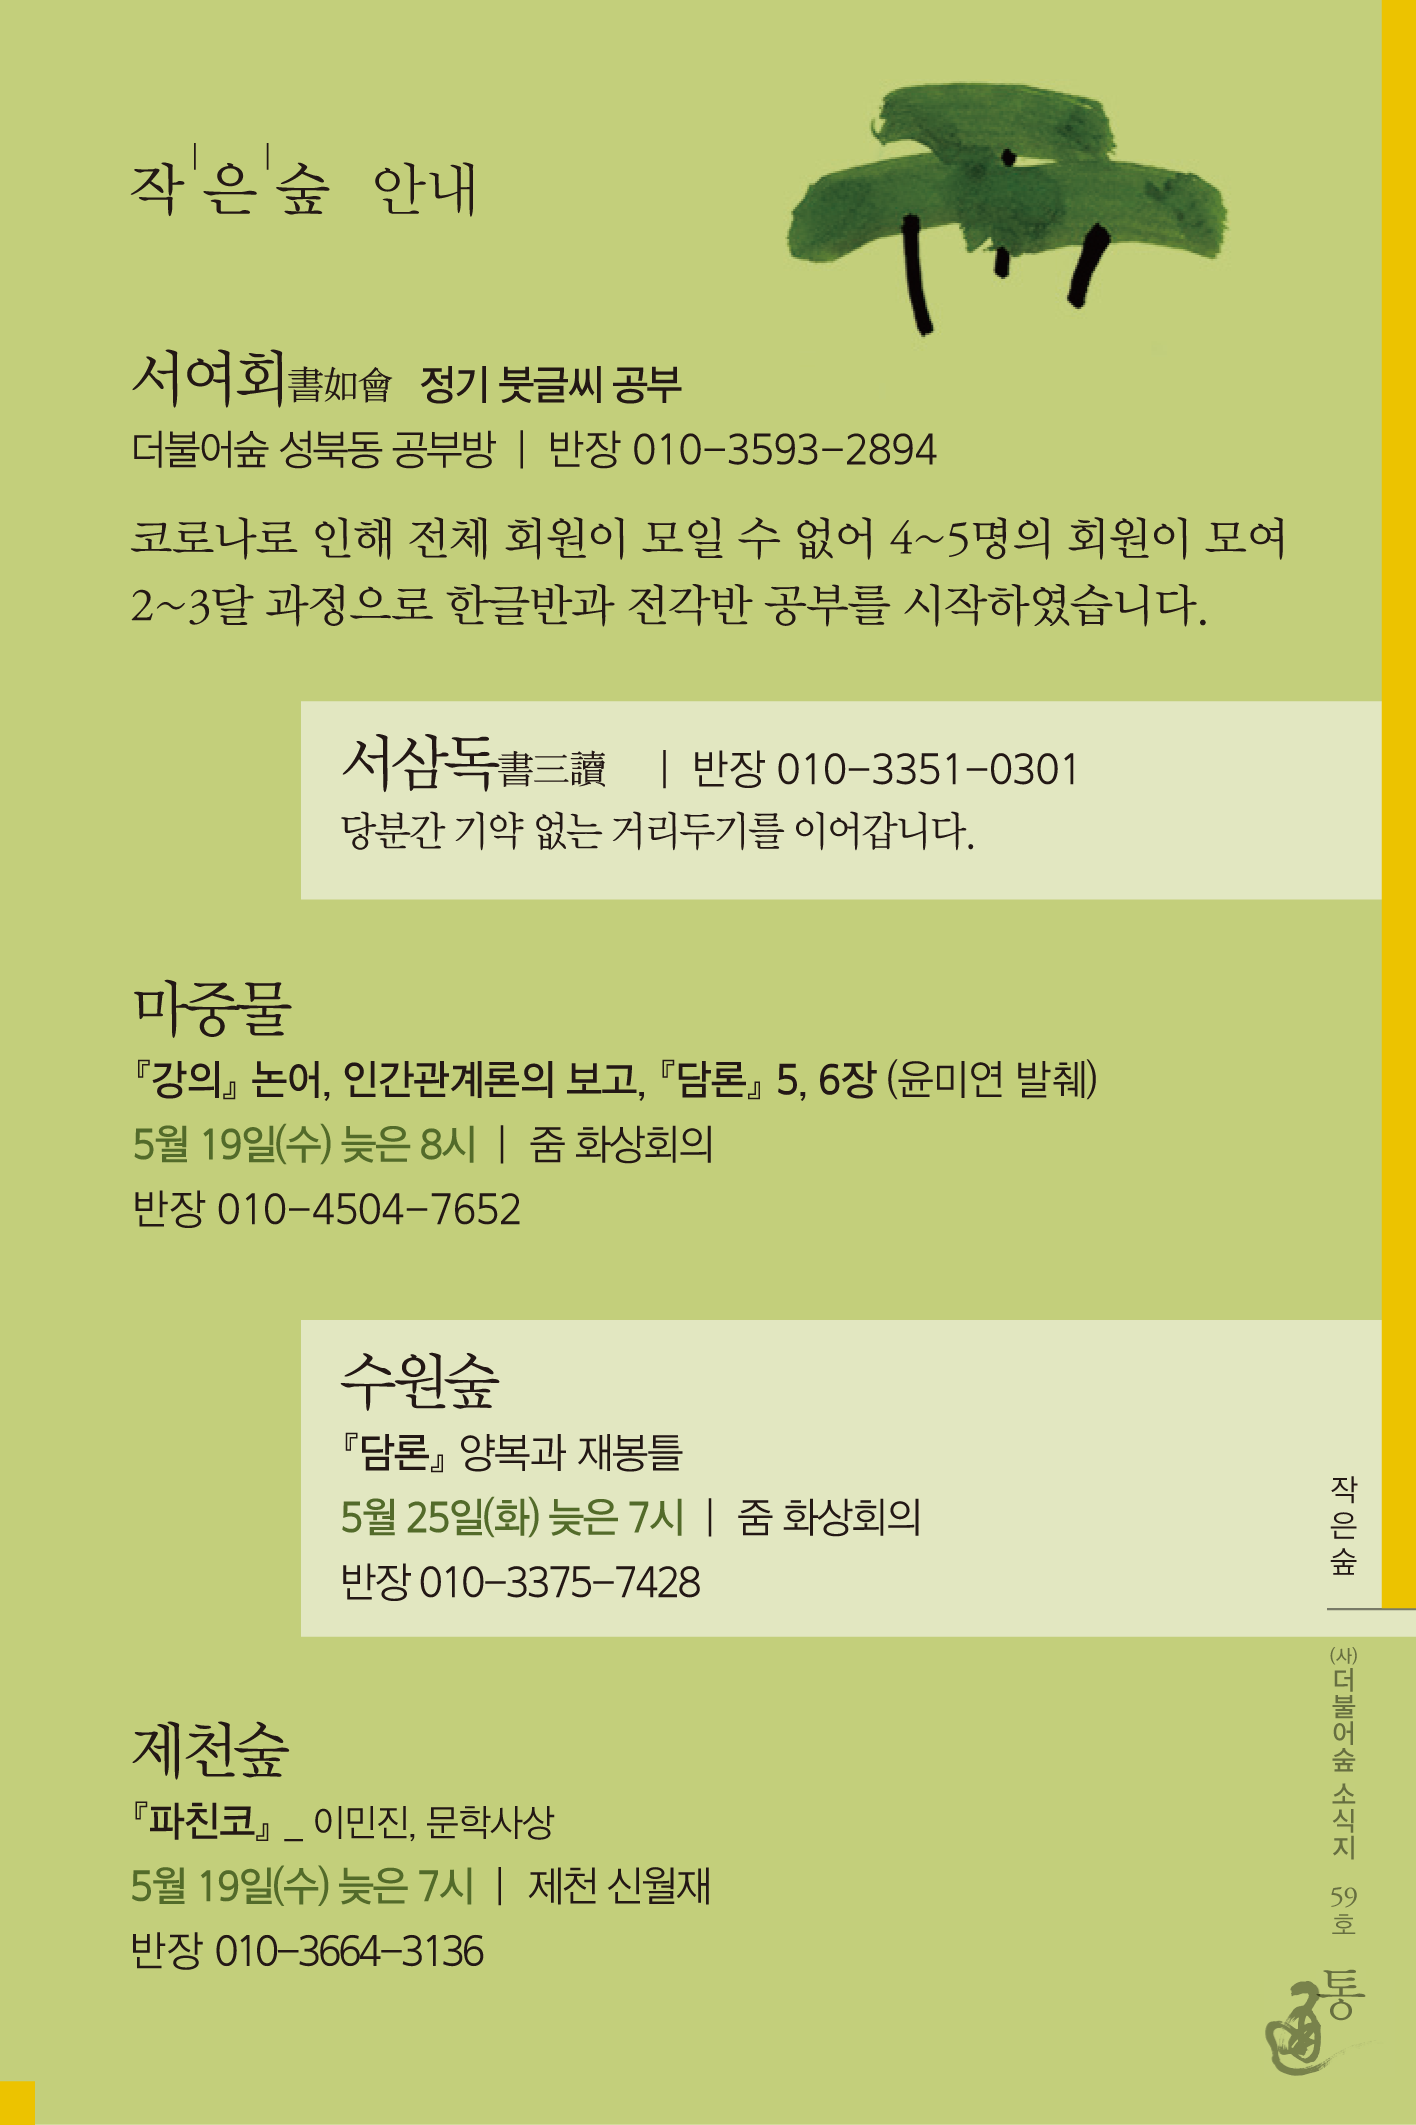 통 59호(2021년 5월호)_ 8 복사.png